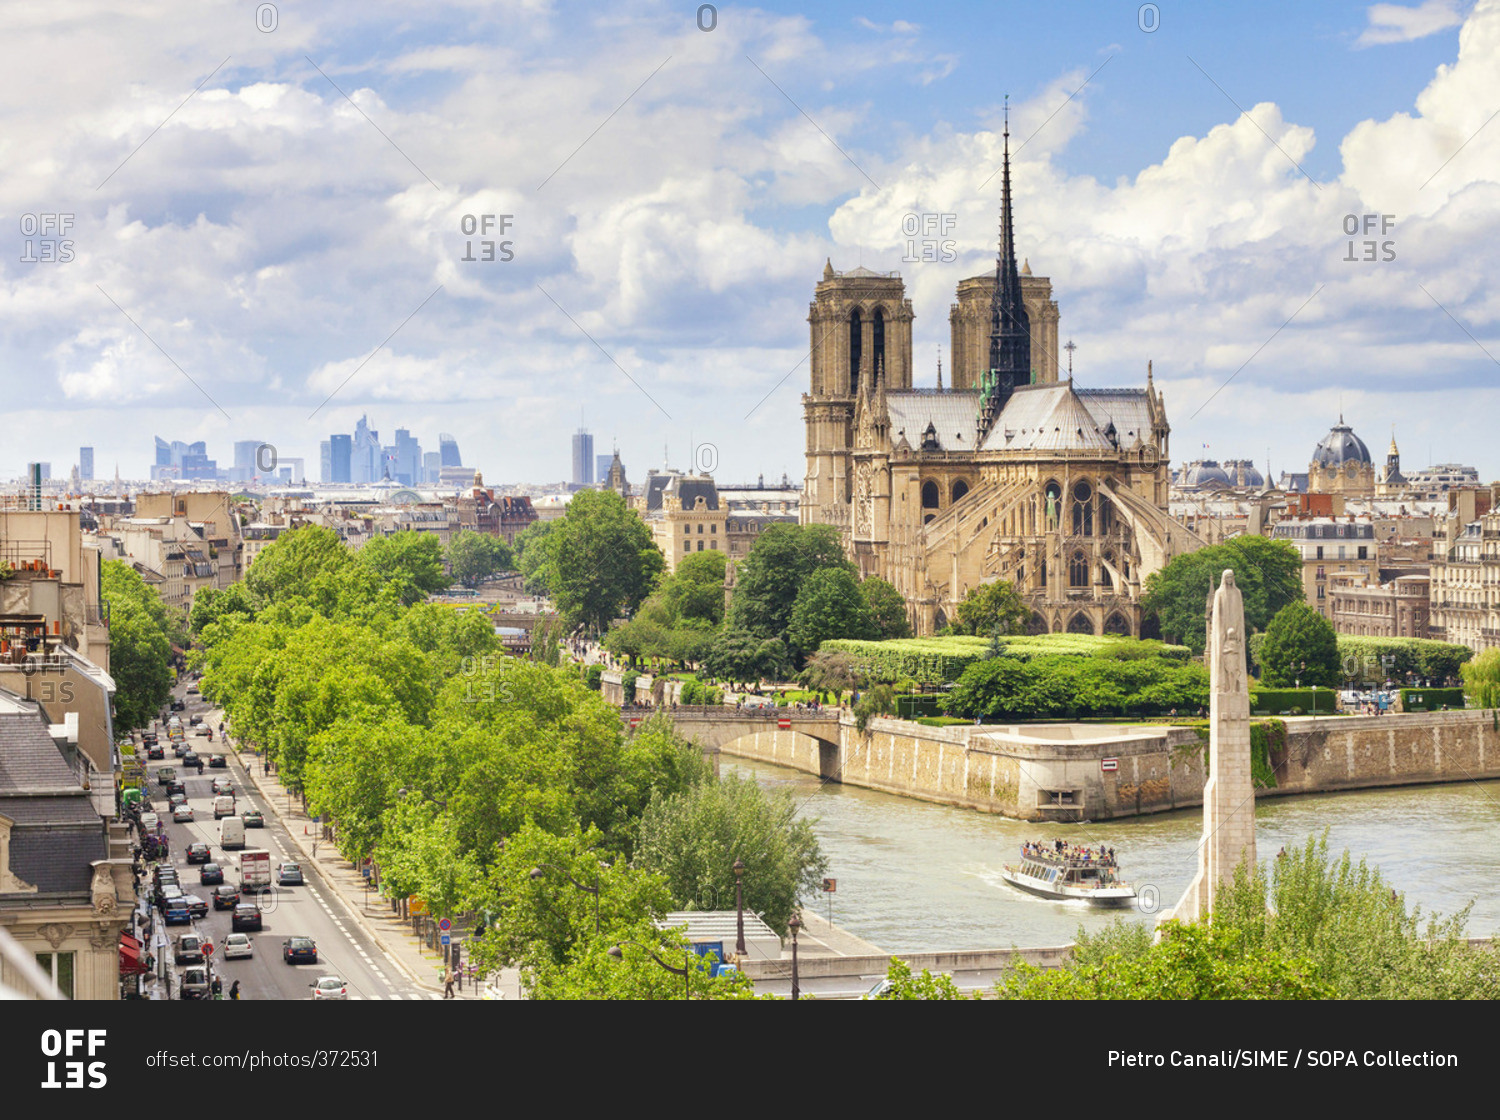 River Seine and La Defense in the background